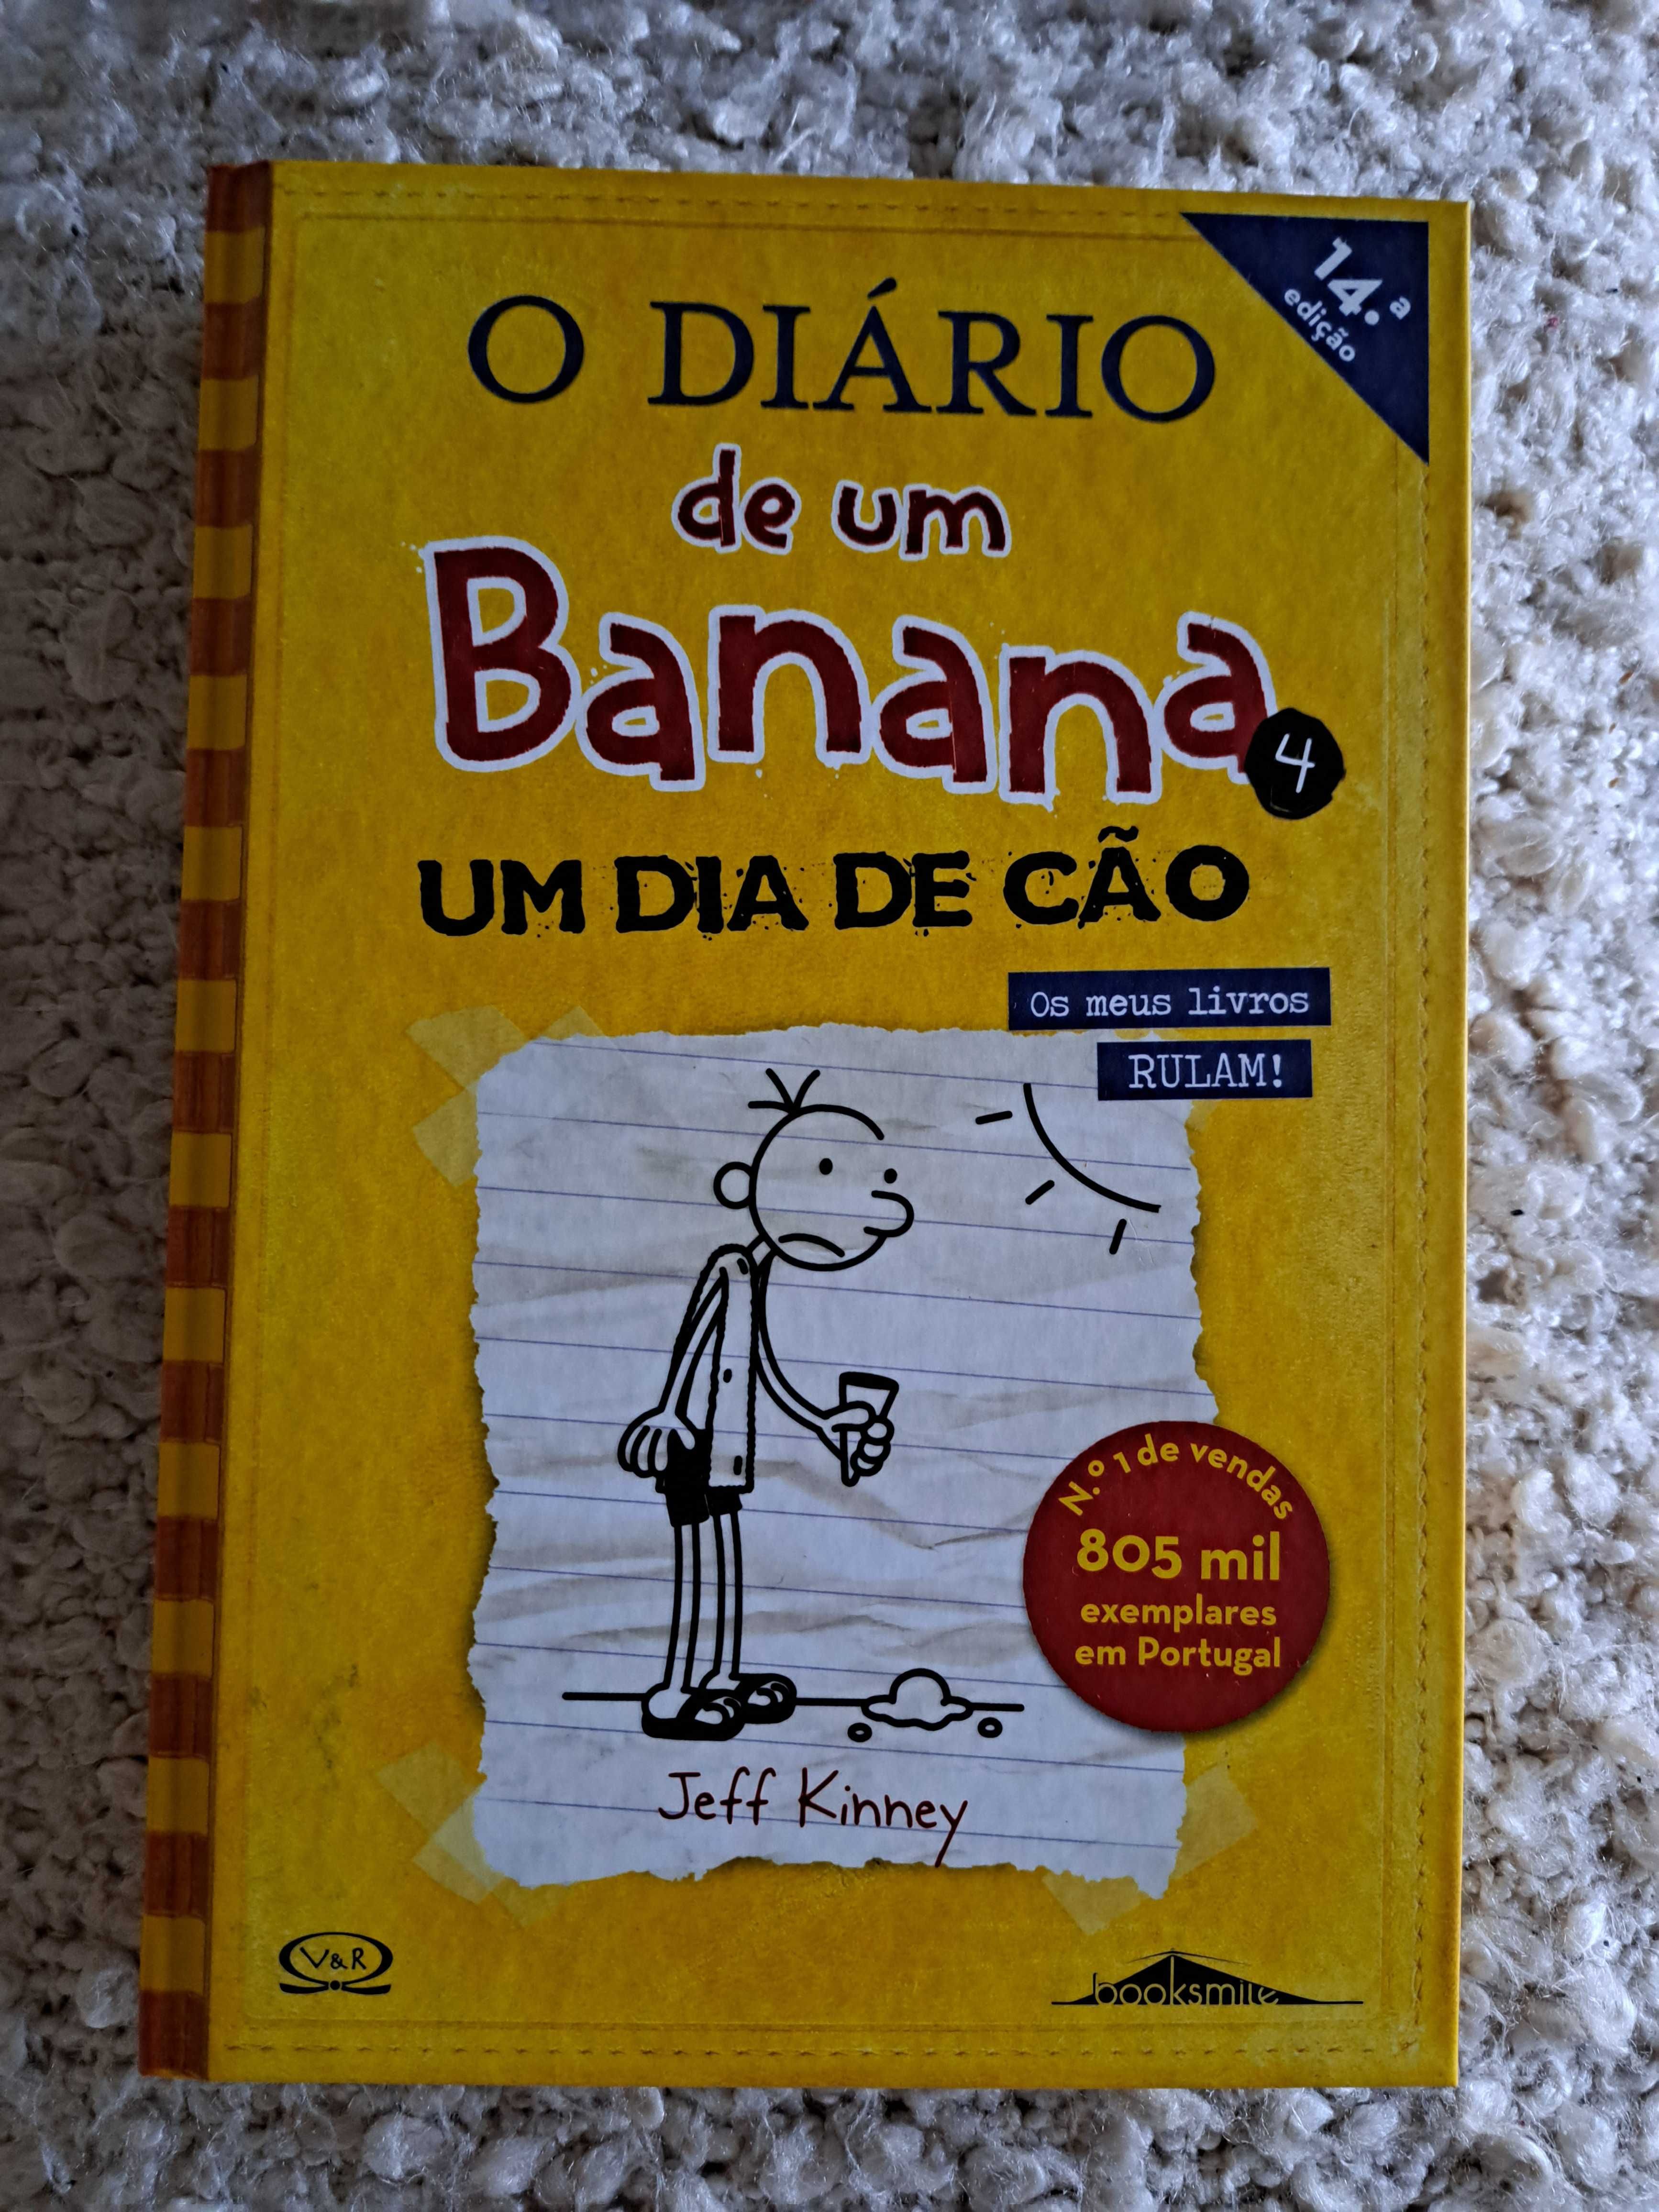 Livros coleção "Diário de um Banana" do 1 ao 8